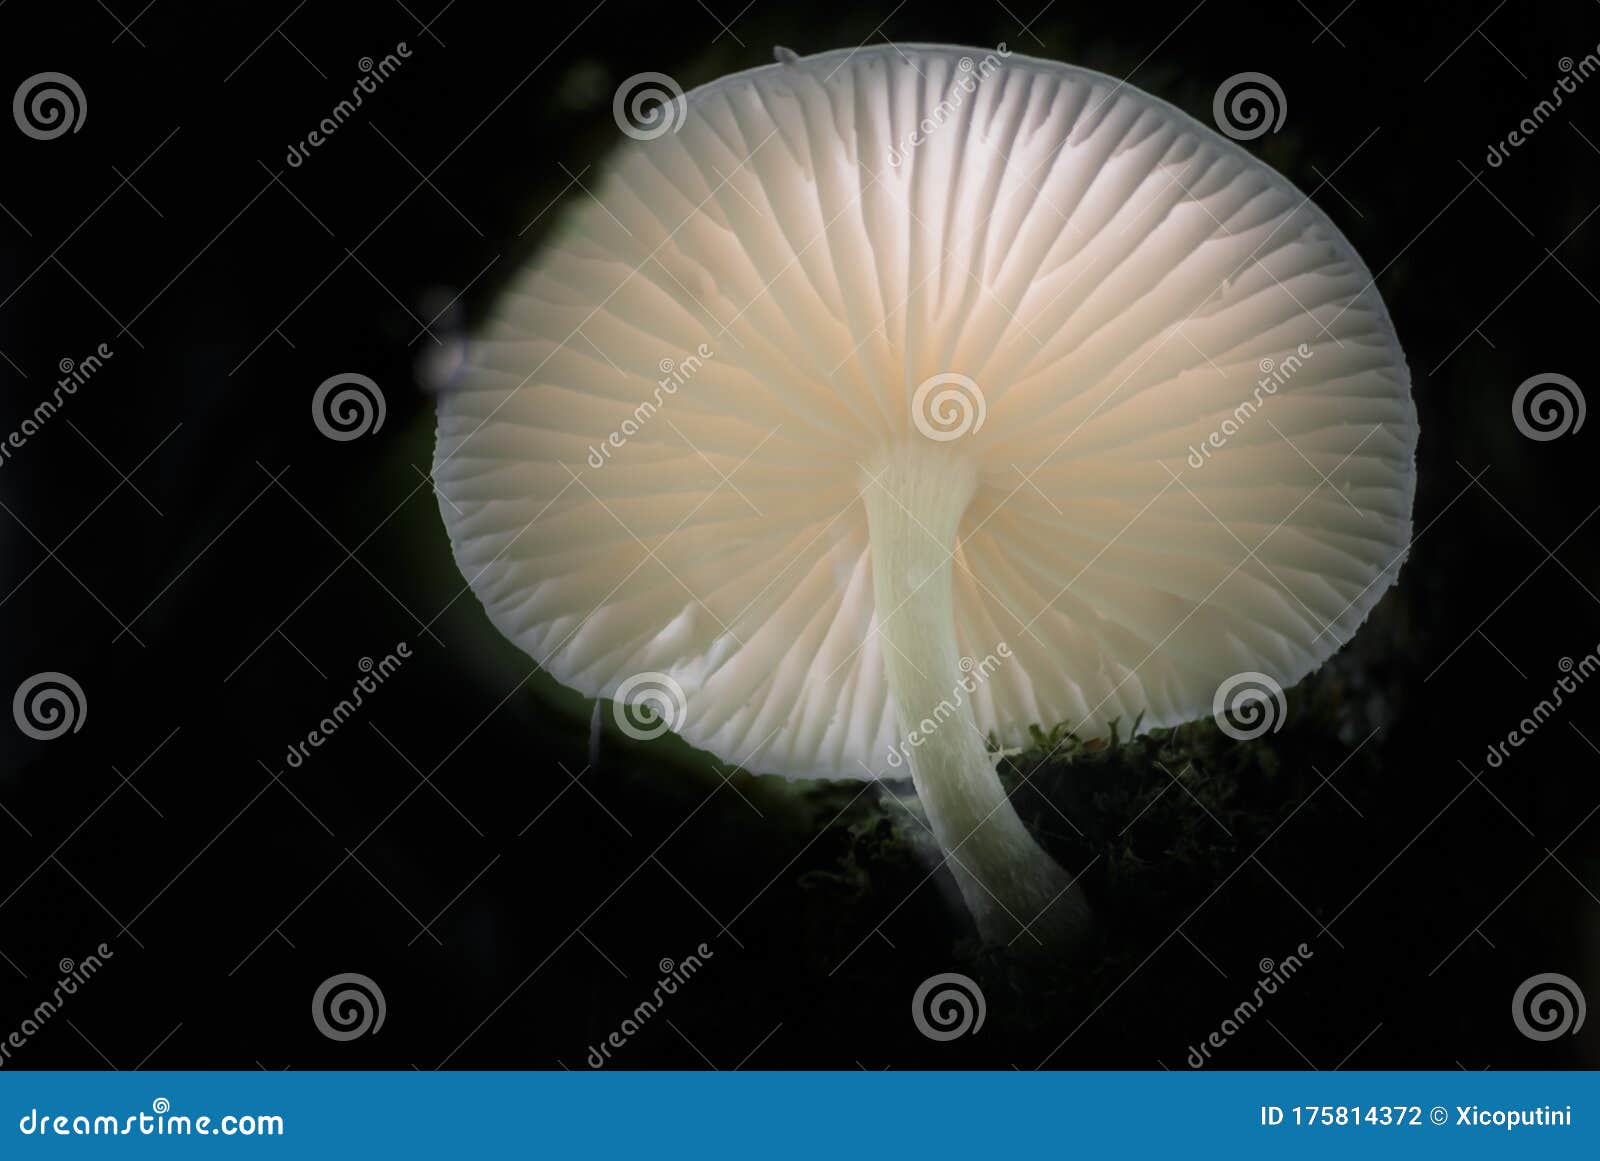 fim do cogumelo transparente da luz de fundo na floresta escura do sul do brasil